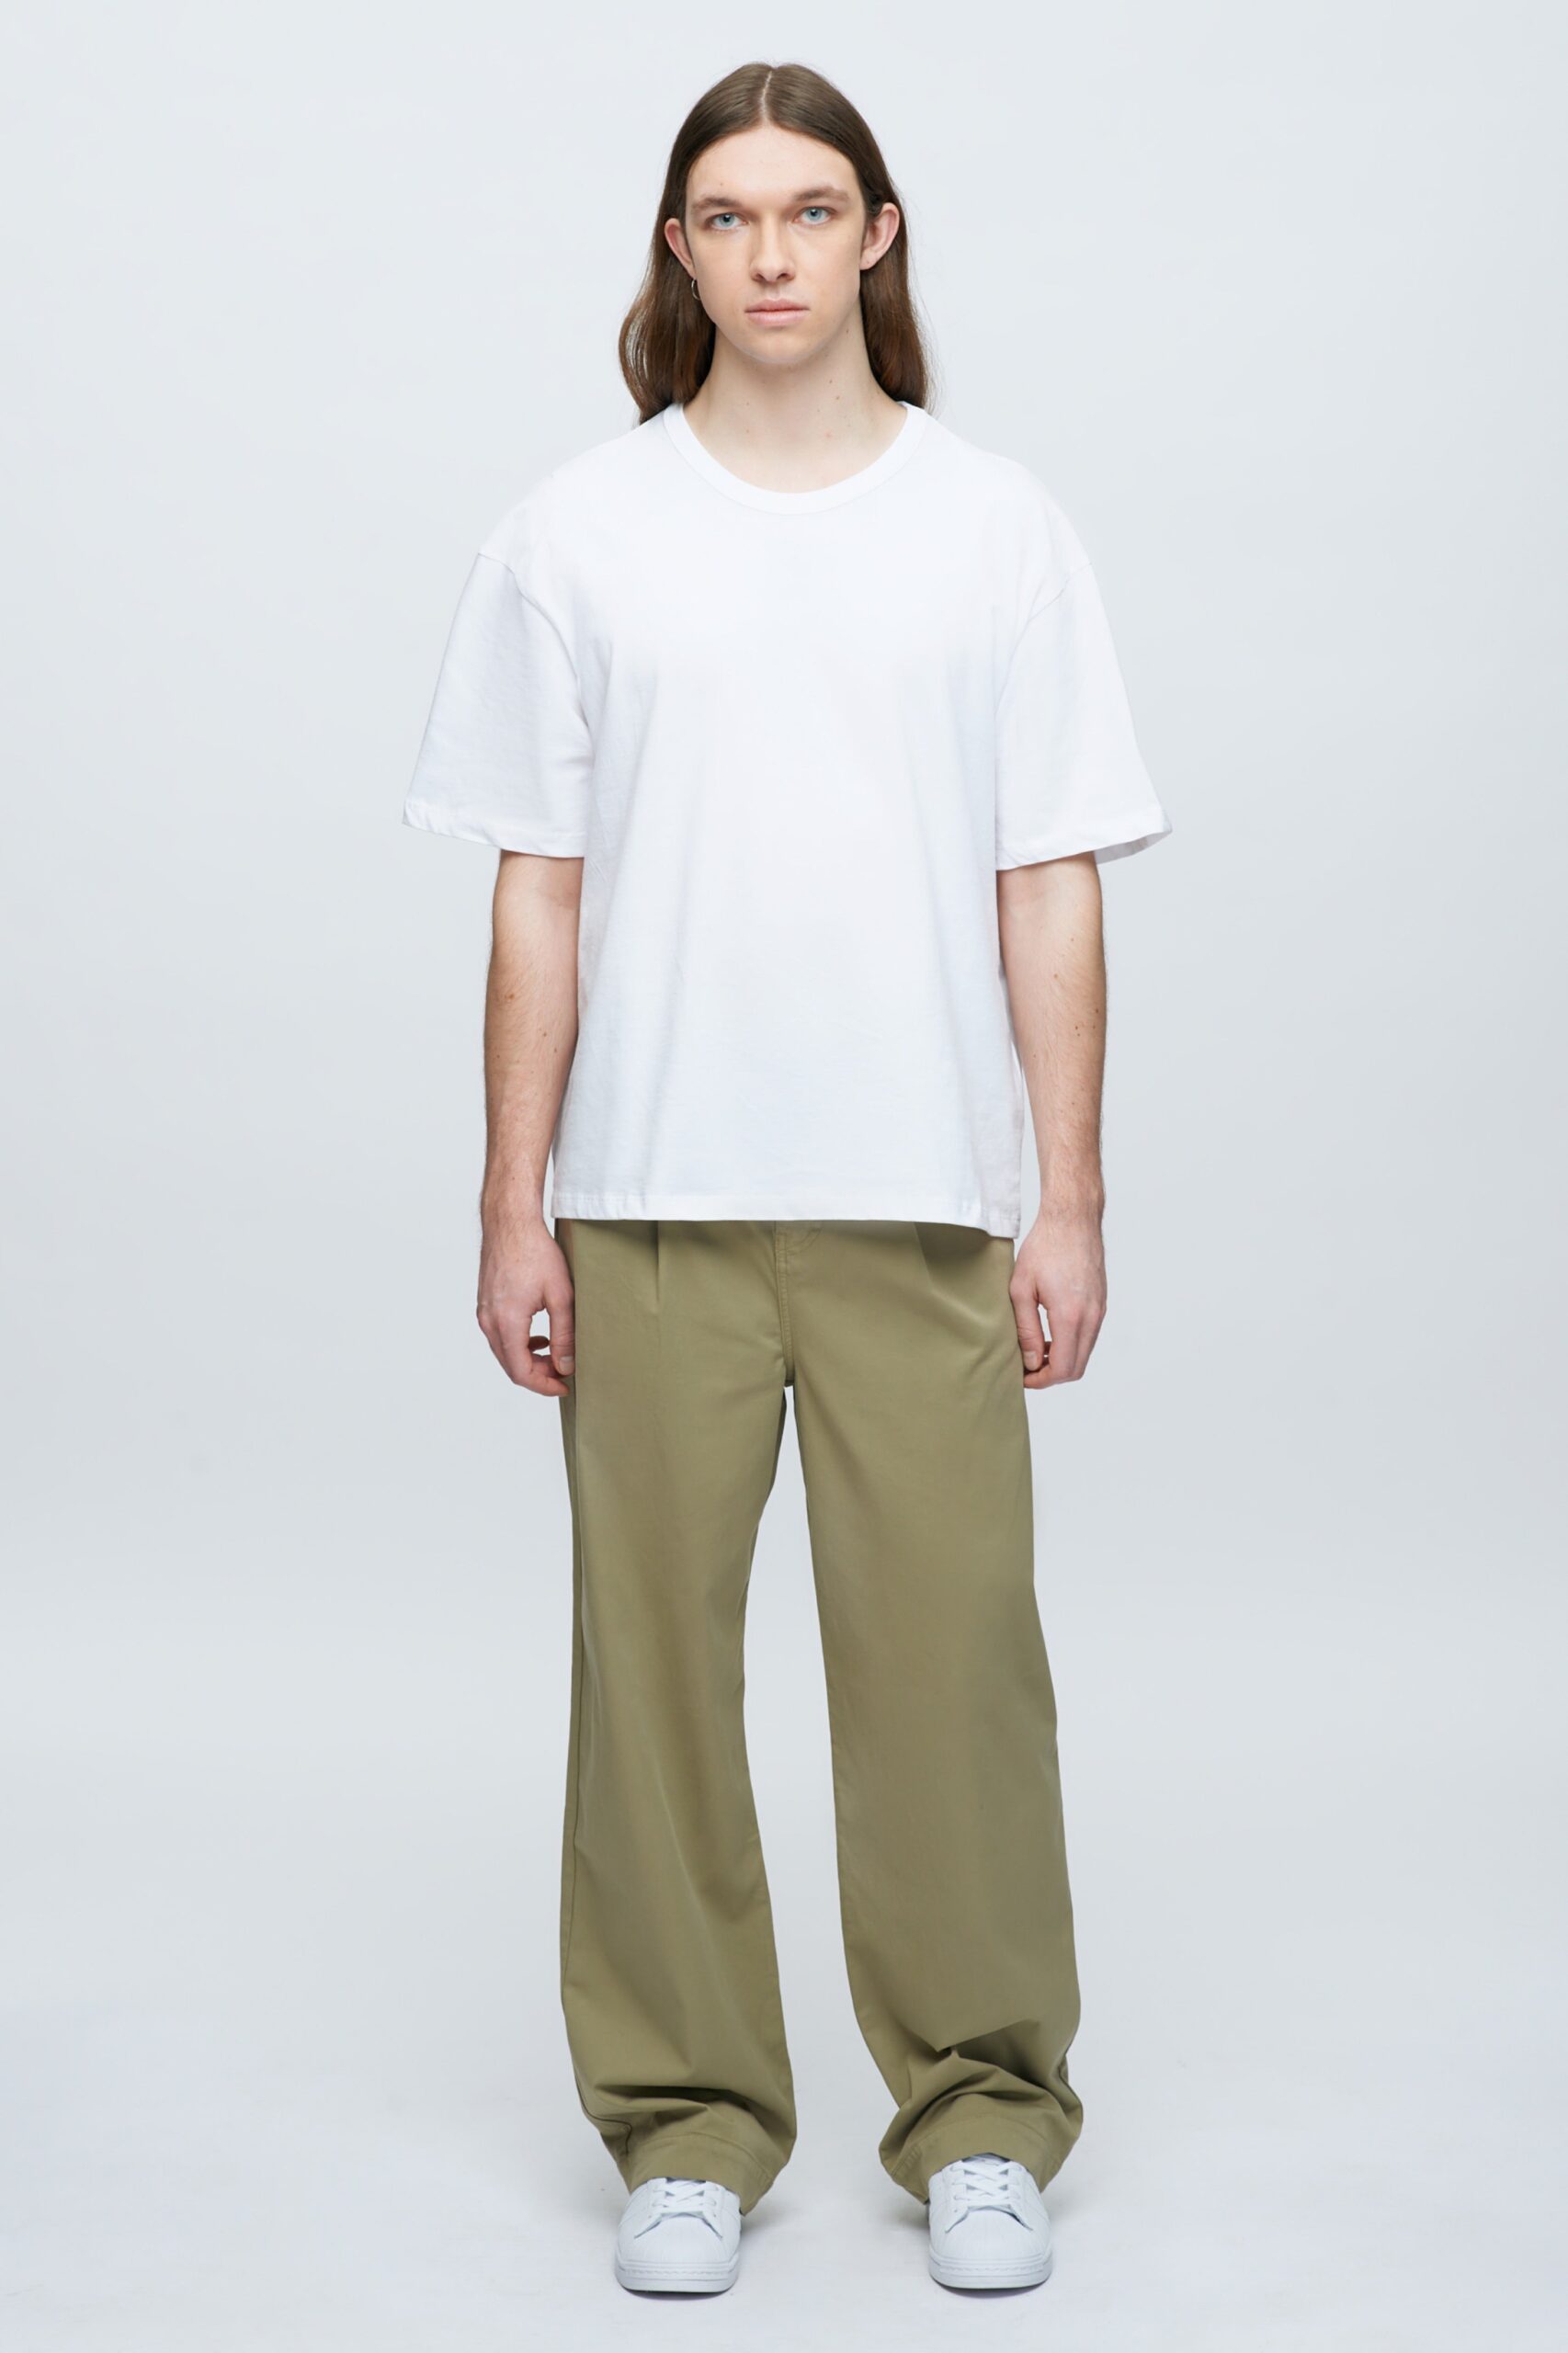 Kotn Men&#8217;s Relaxed Crew T-Shirt in White